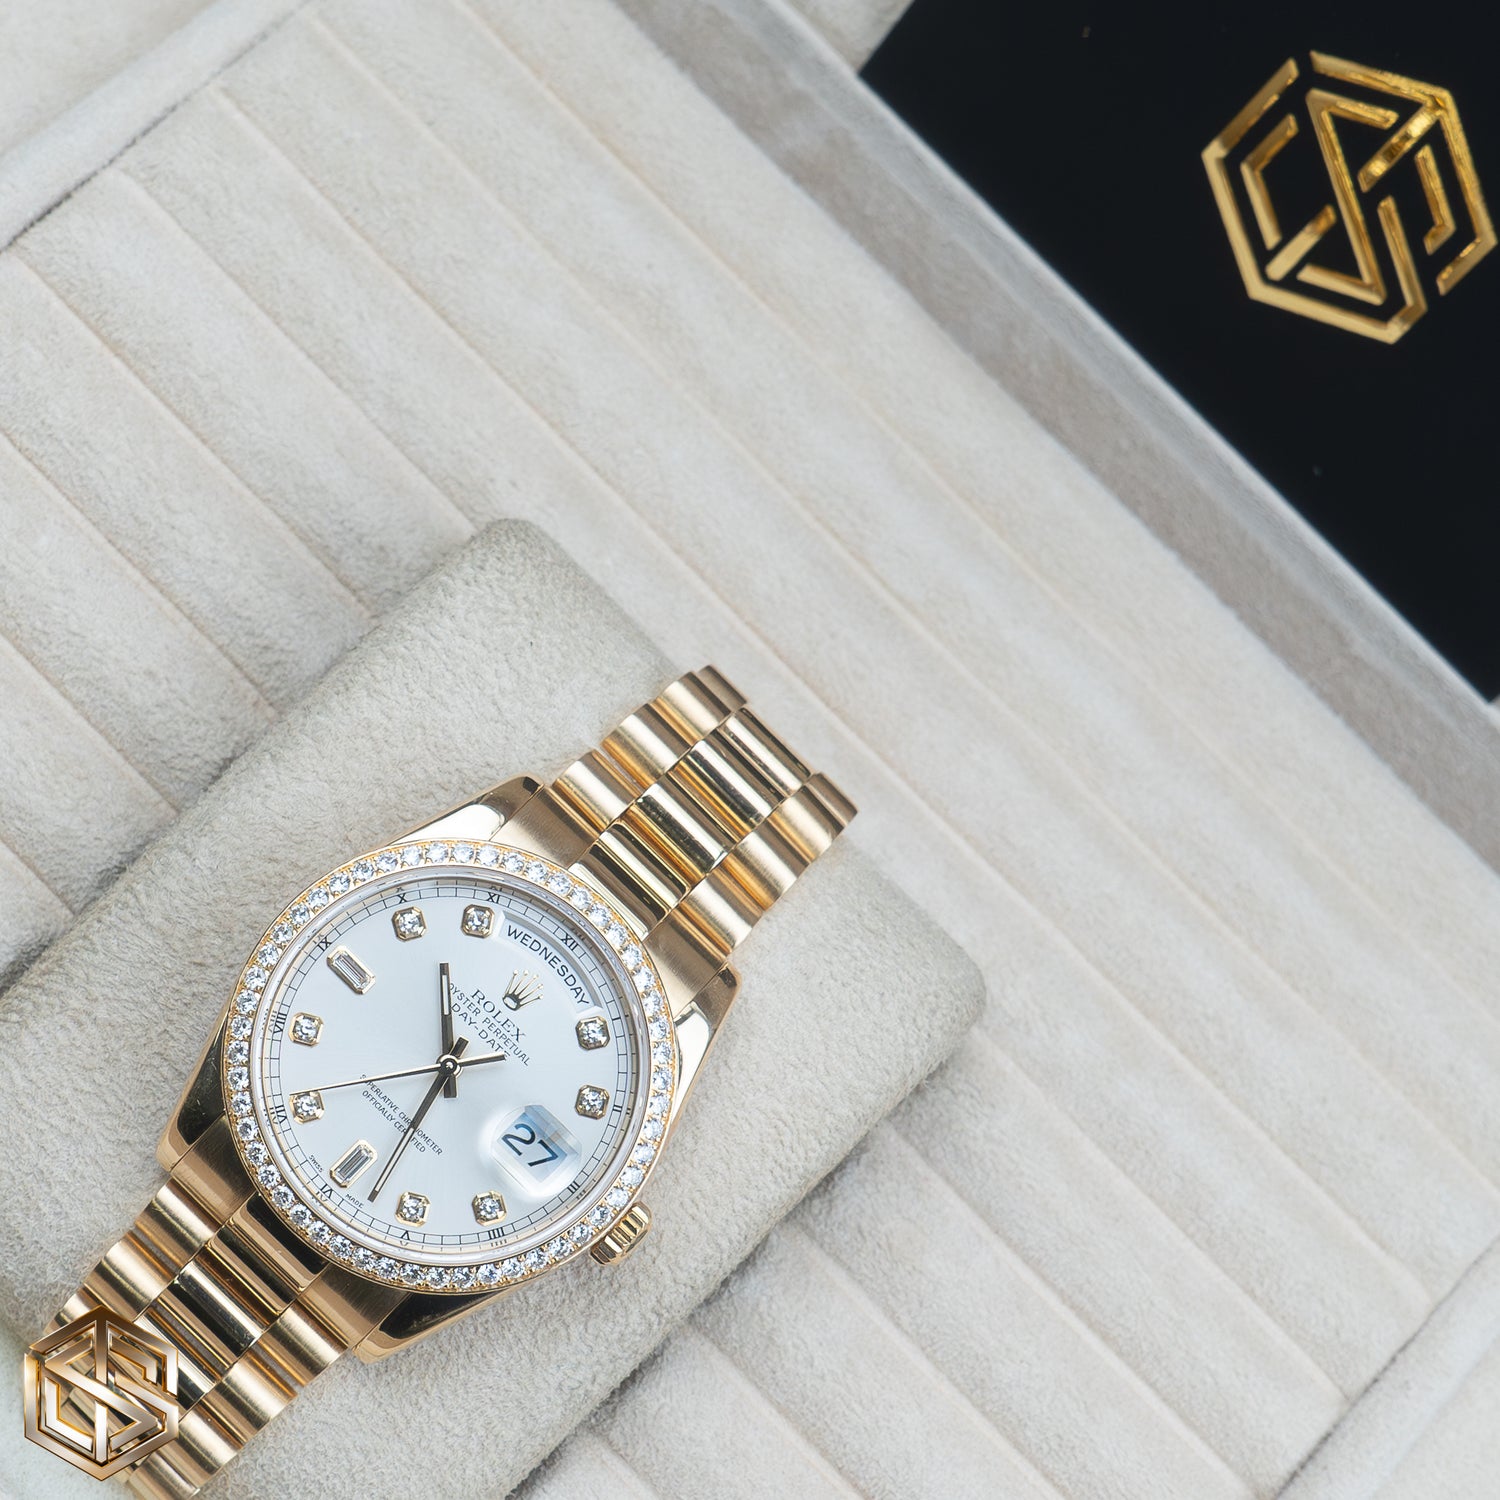 Rolex 118348 Day-Date 36 Yellow Gold Factory Diamond Dial & Bezel 2004 Serviced 2019 Full Set Watch